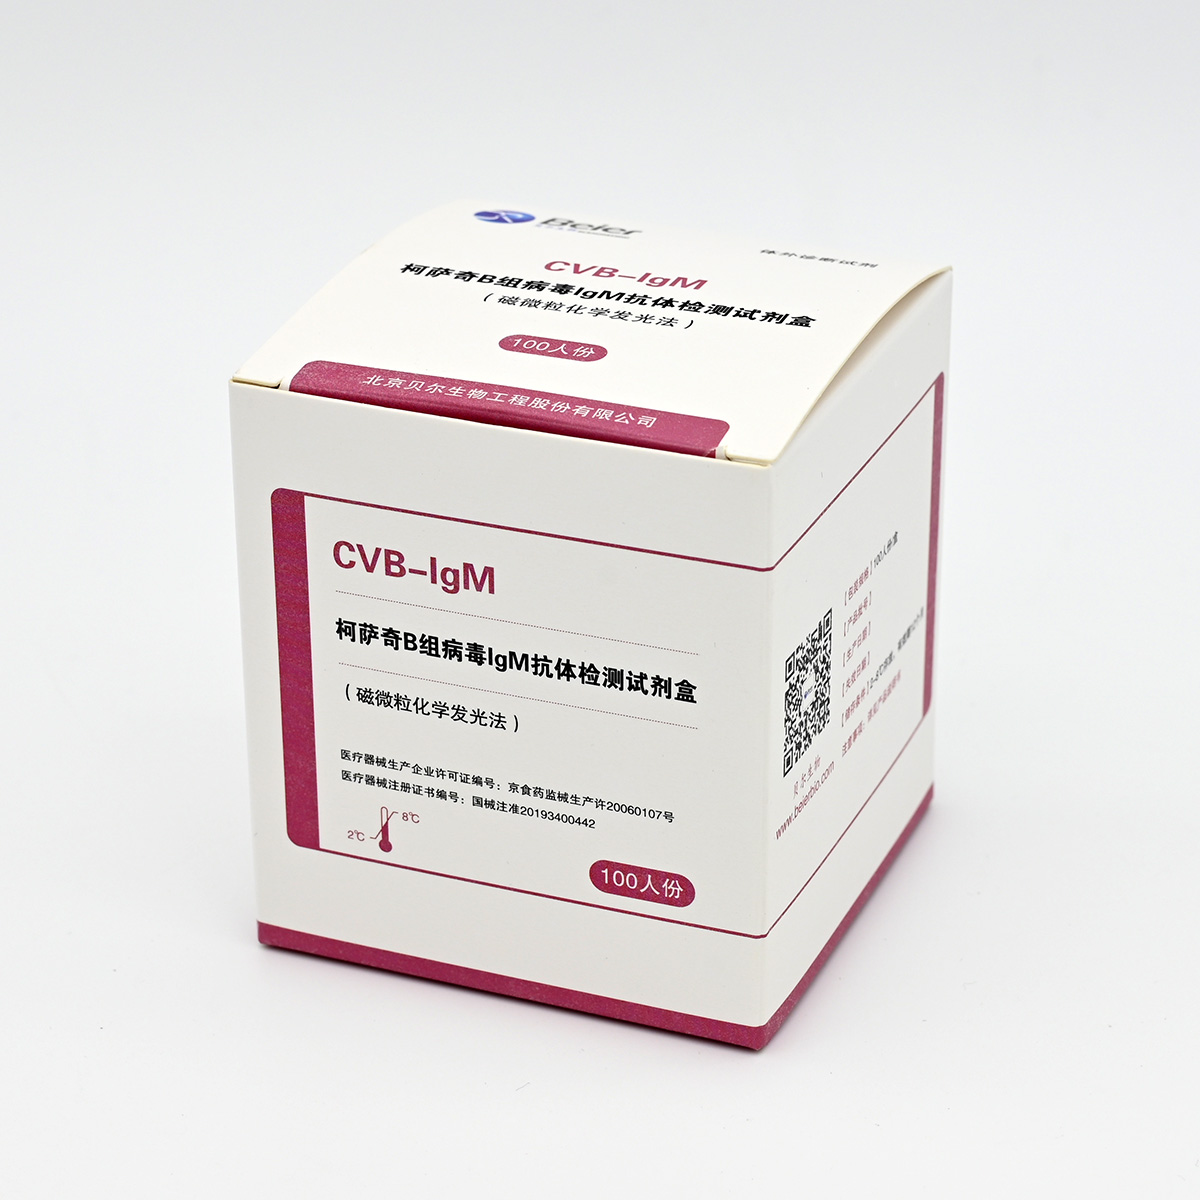 【贝尔】柯萨奇B组病毒IgM抗体检测试剂盒(磁微粒化学发光法)